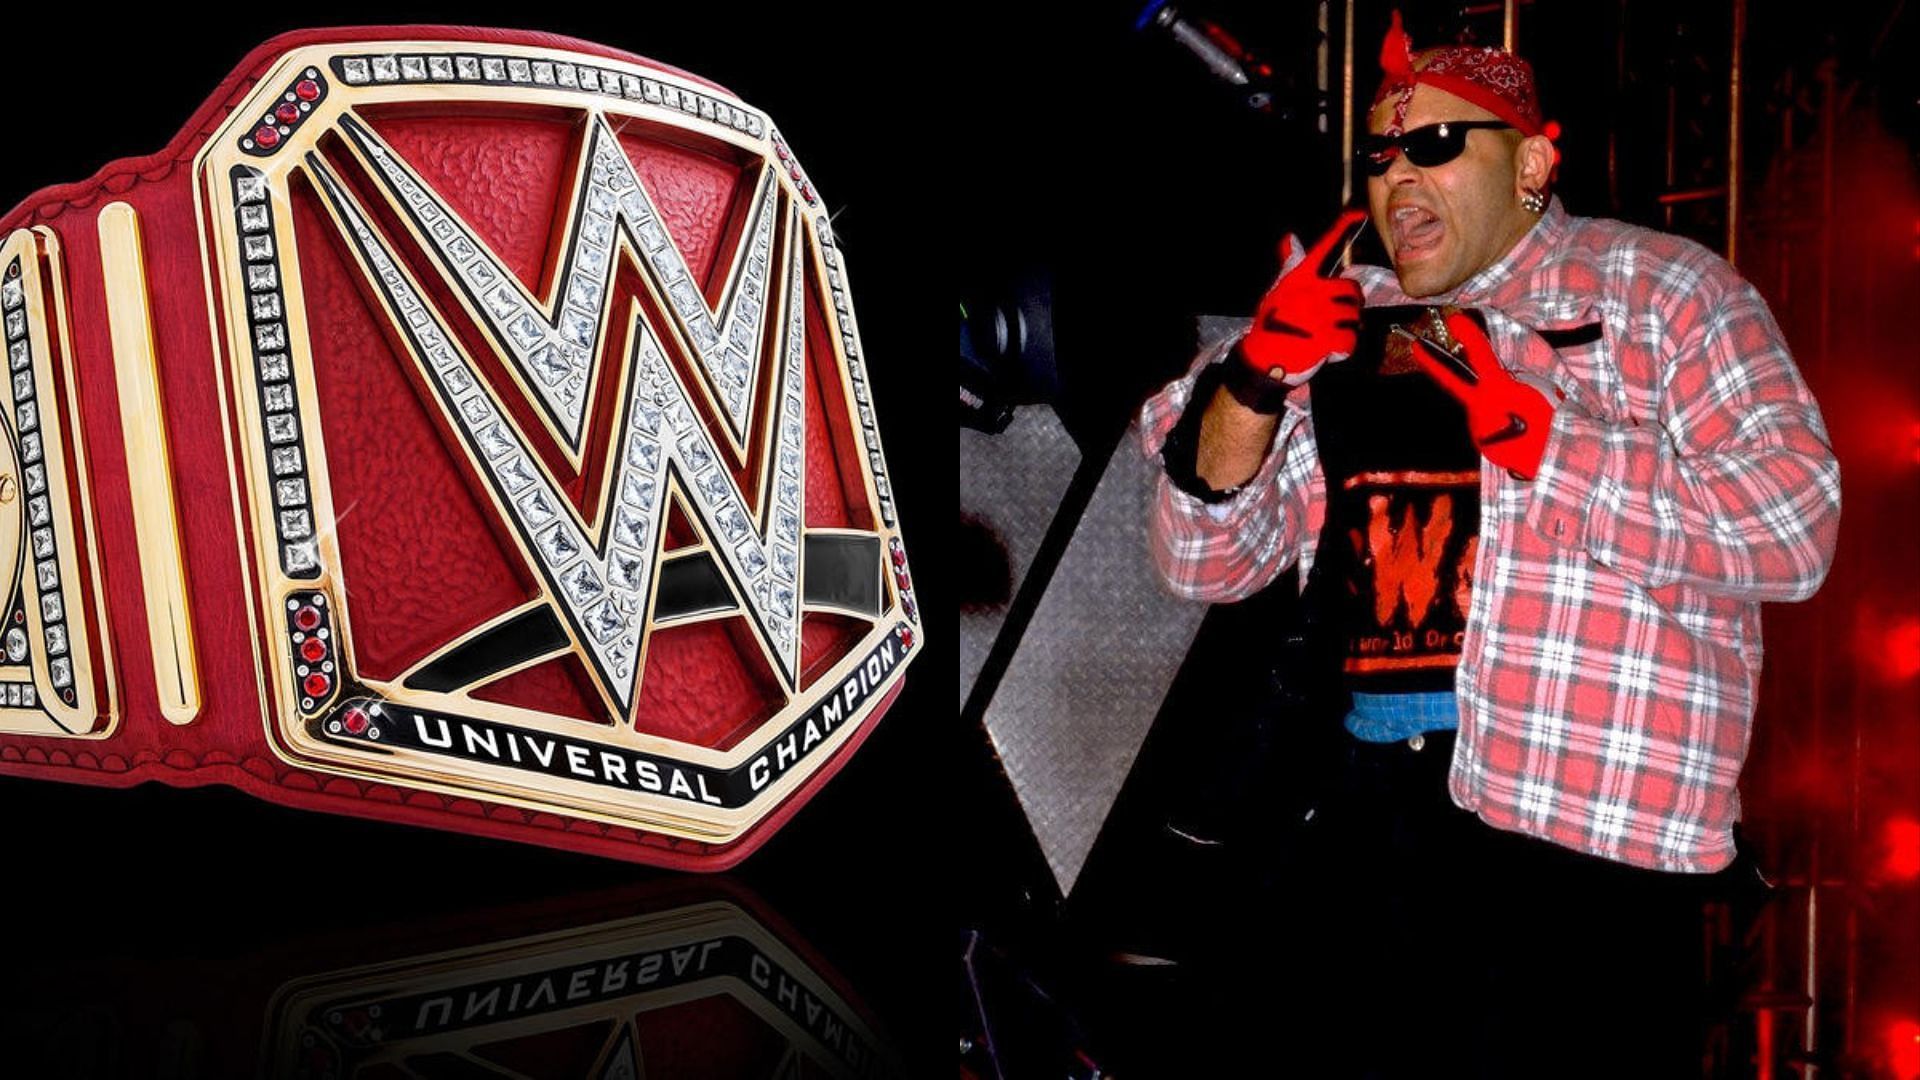 Konnan is a former WCW wrestler